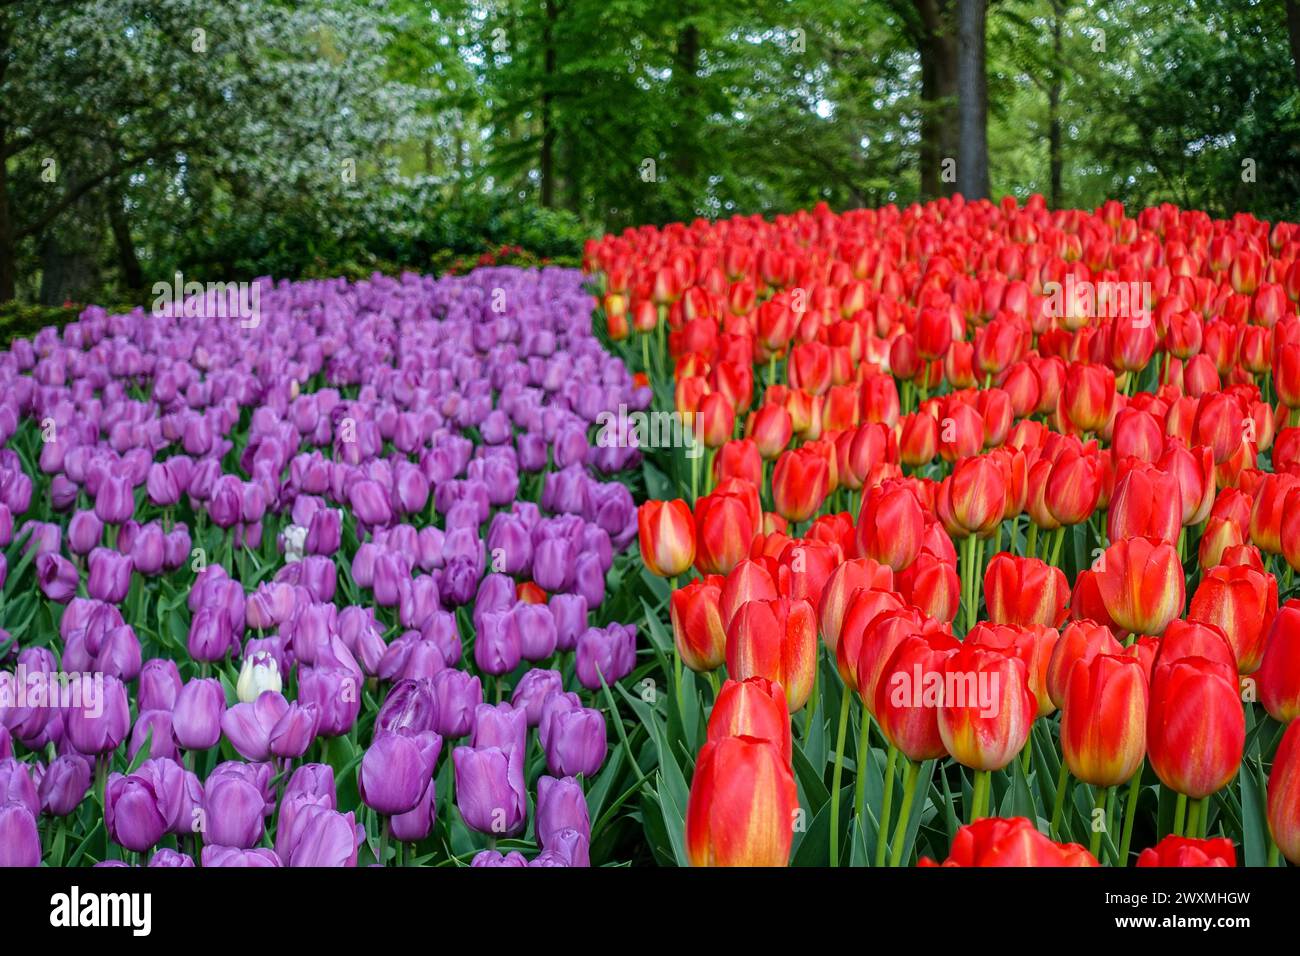 Tulipes rouges éclatantes fleurissant dans un champ floral dense, un spectacle étonnant de beauté printanière, dans les champs agricoles de la région des bulbes floraux, aux pays-Bas Banque D'Images